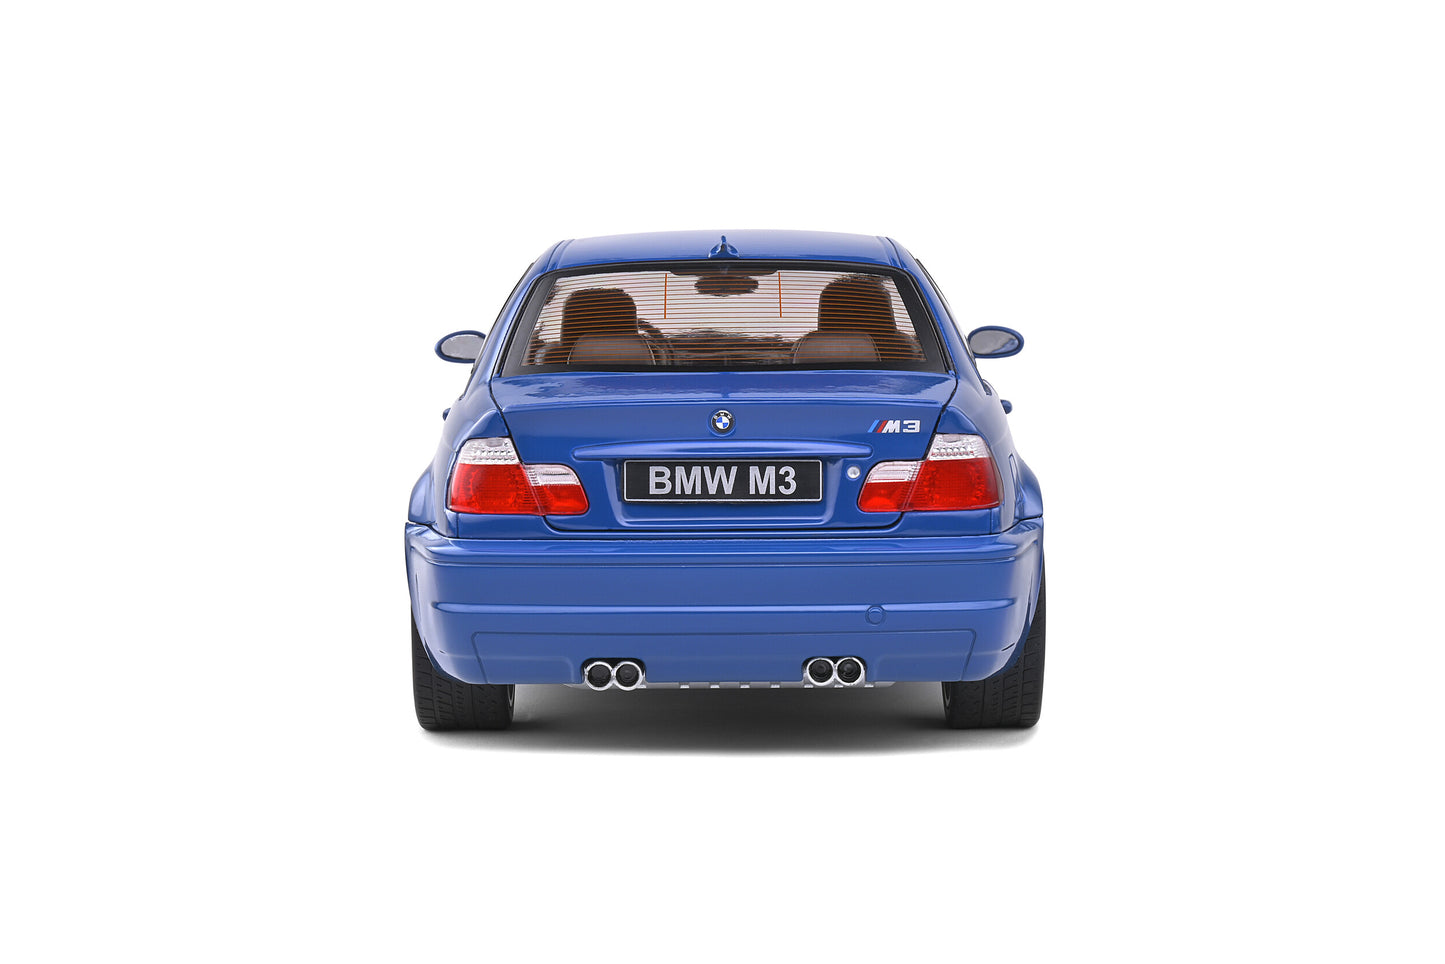 1:18 BMW M3 E46, 2000, blå, Solido 1806502, delvis åben model